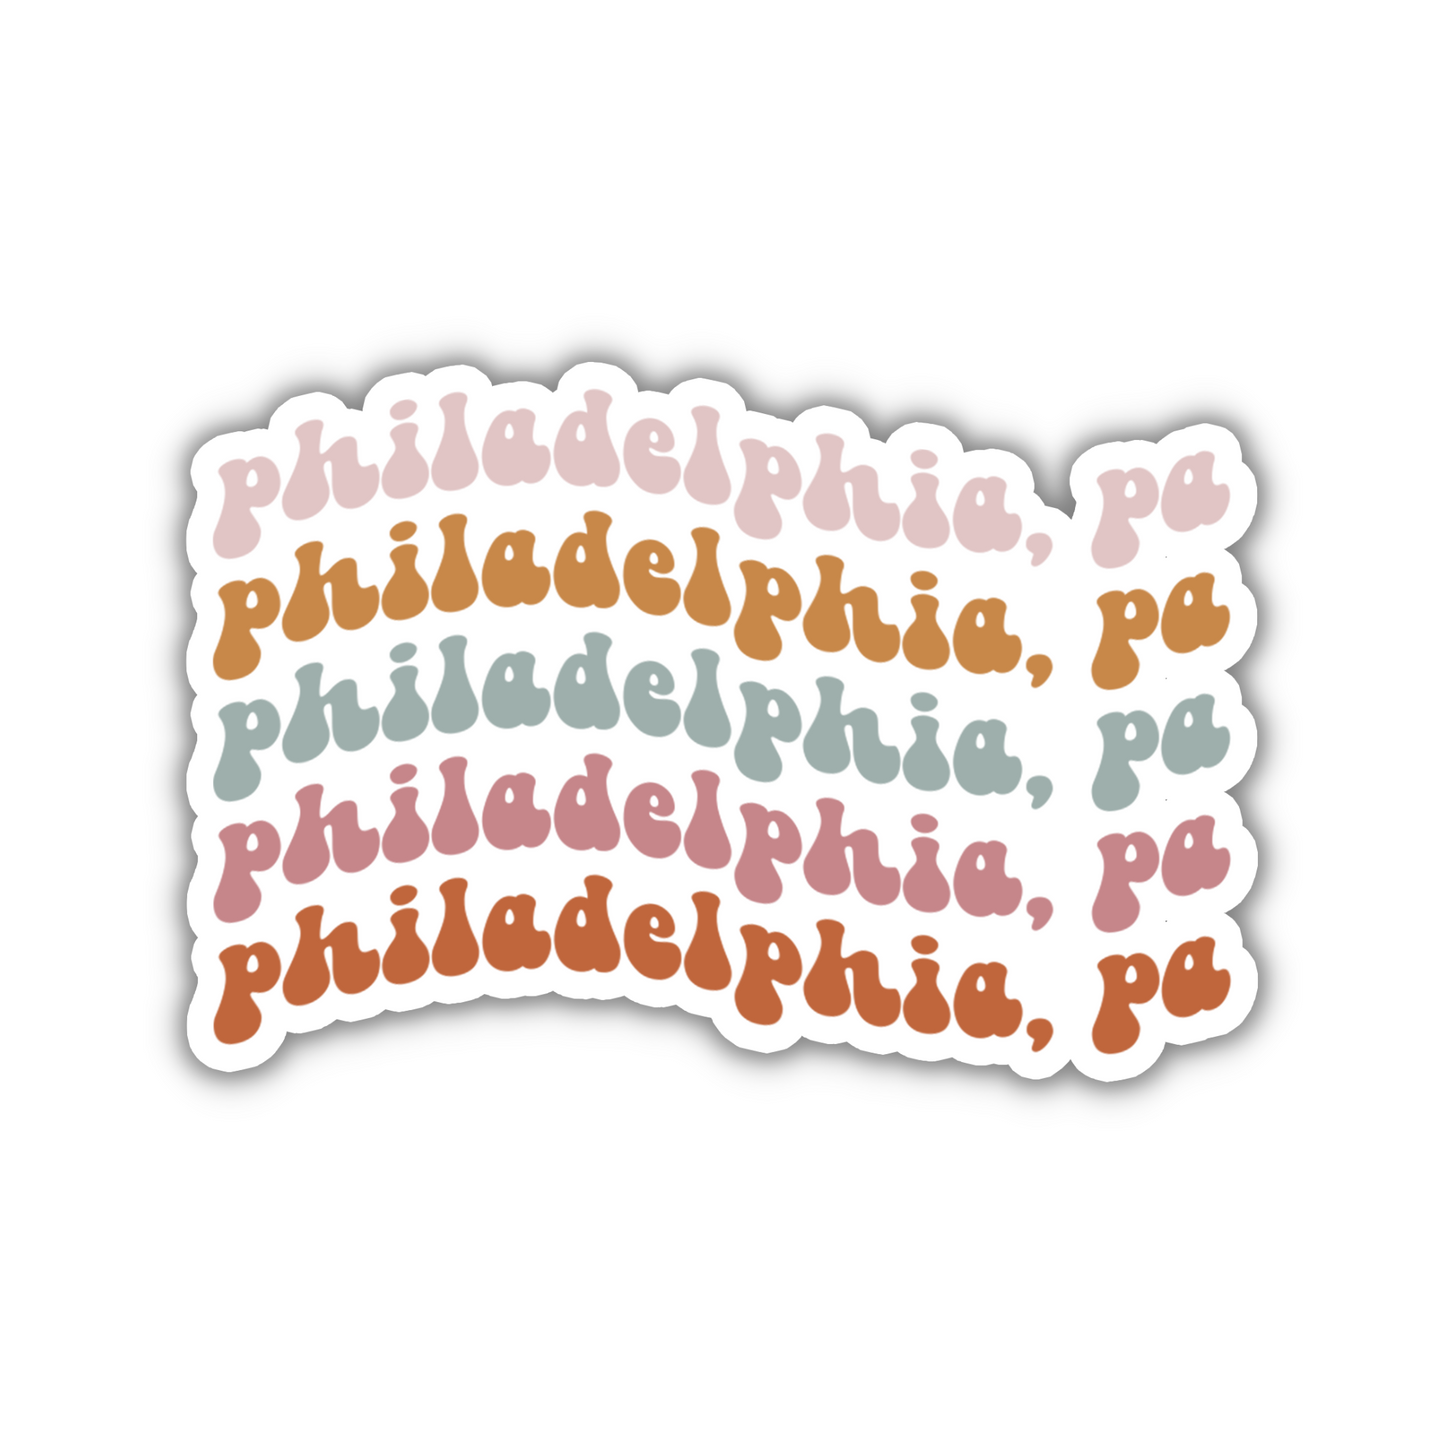 Philadelphia, PA Retro Sticker